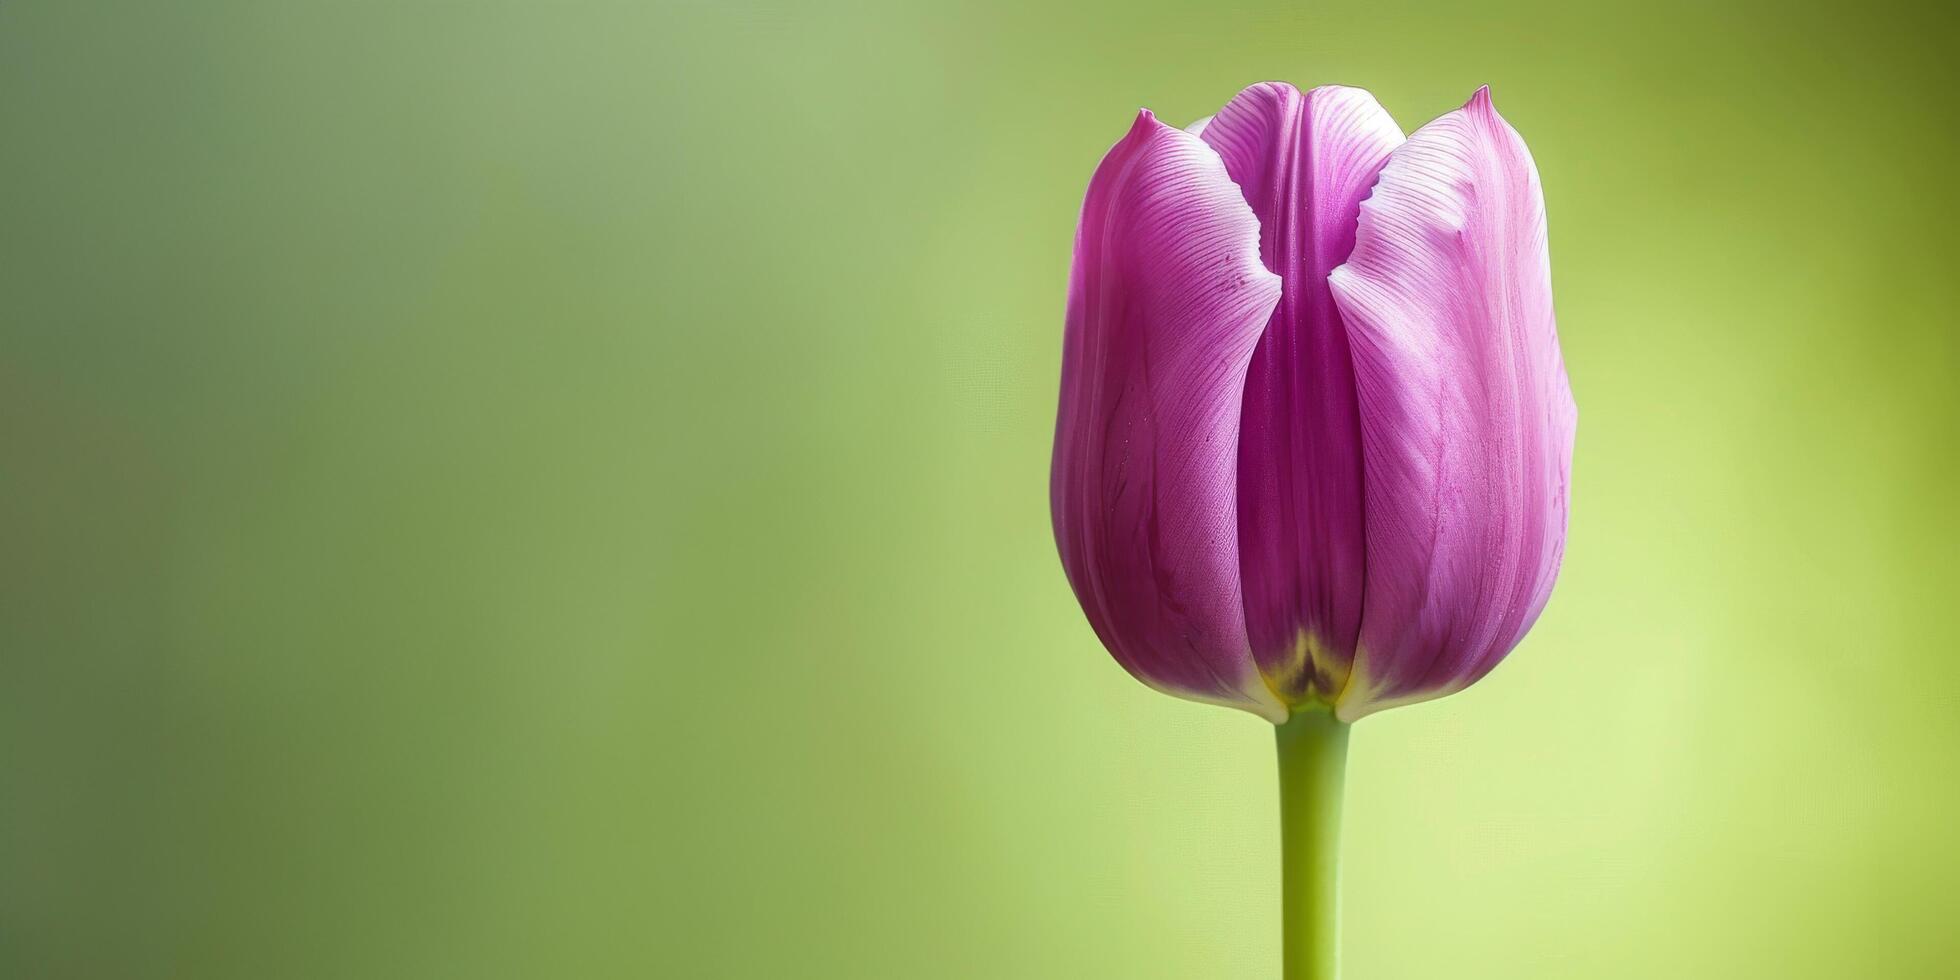 só roxa tulipa retrato foto